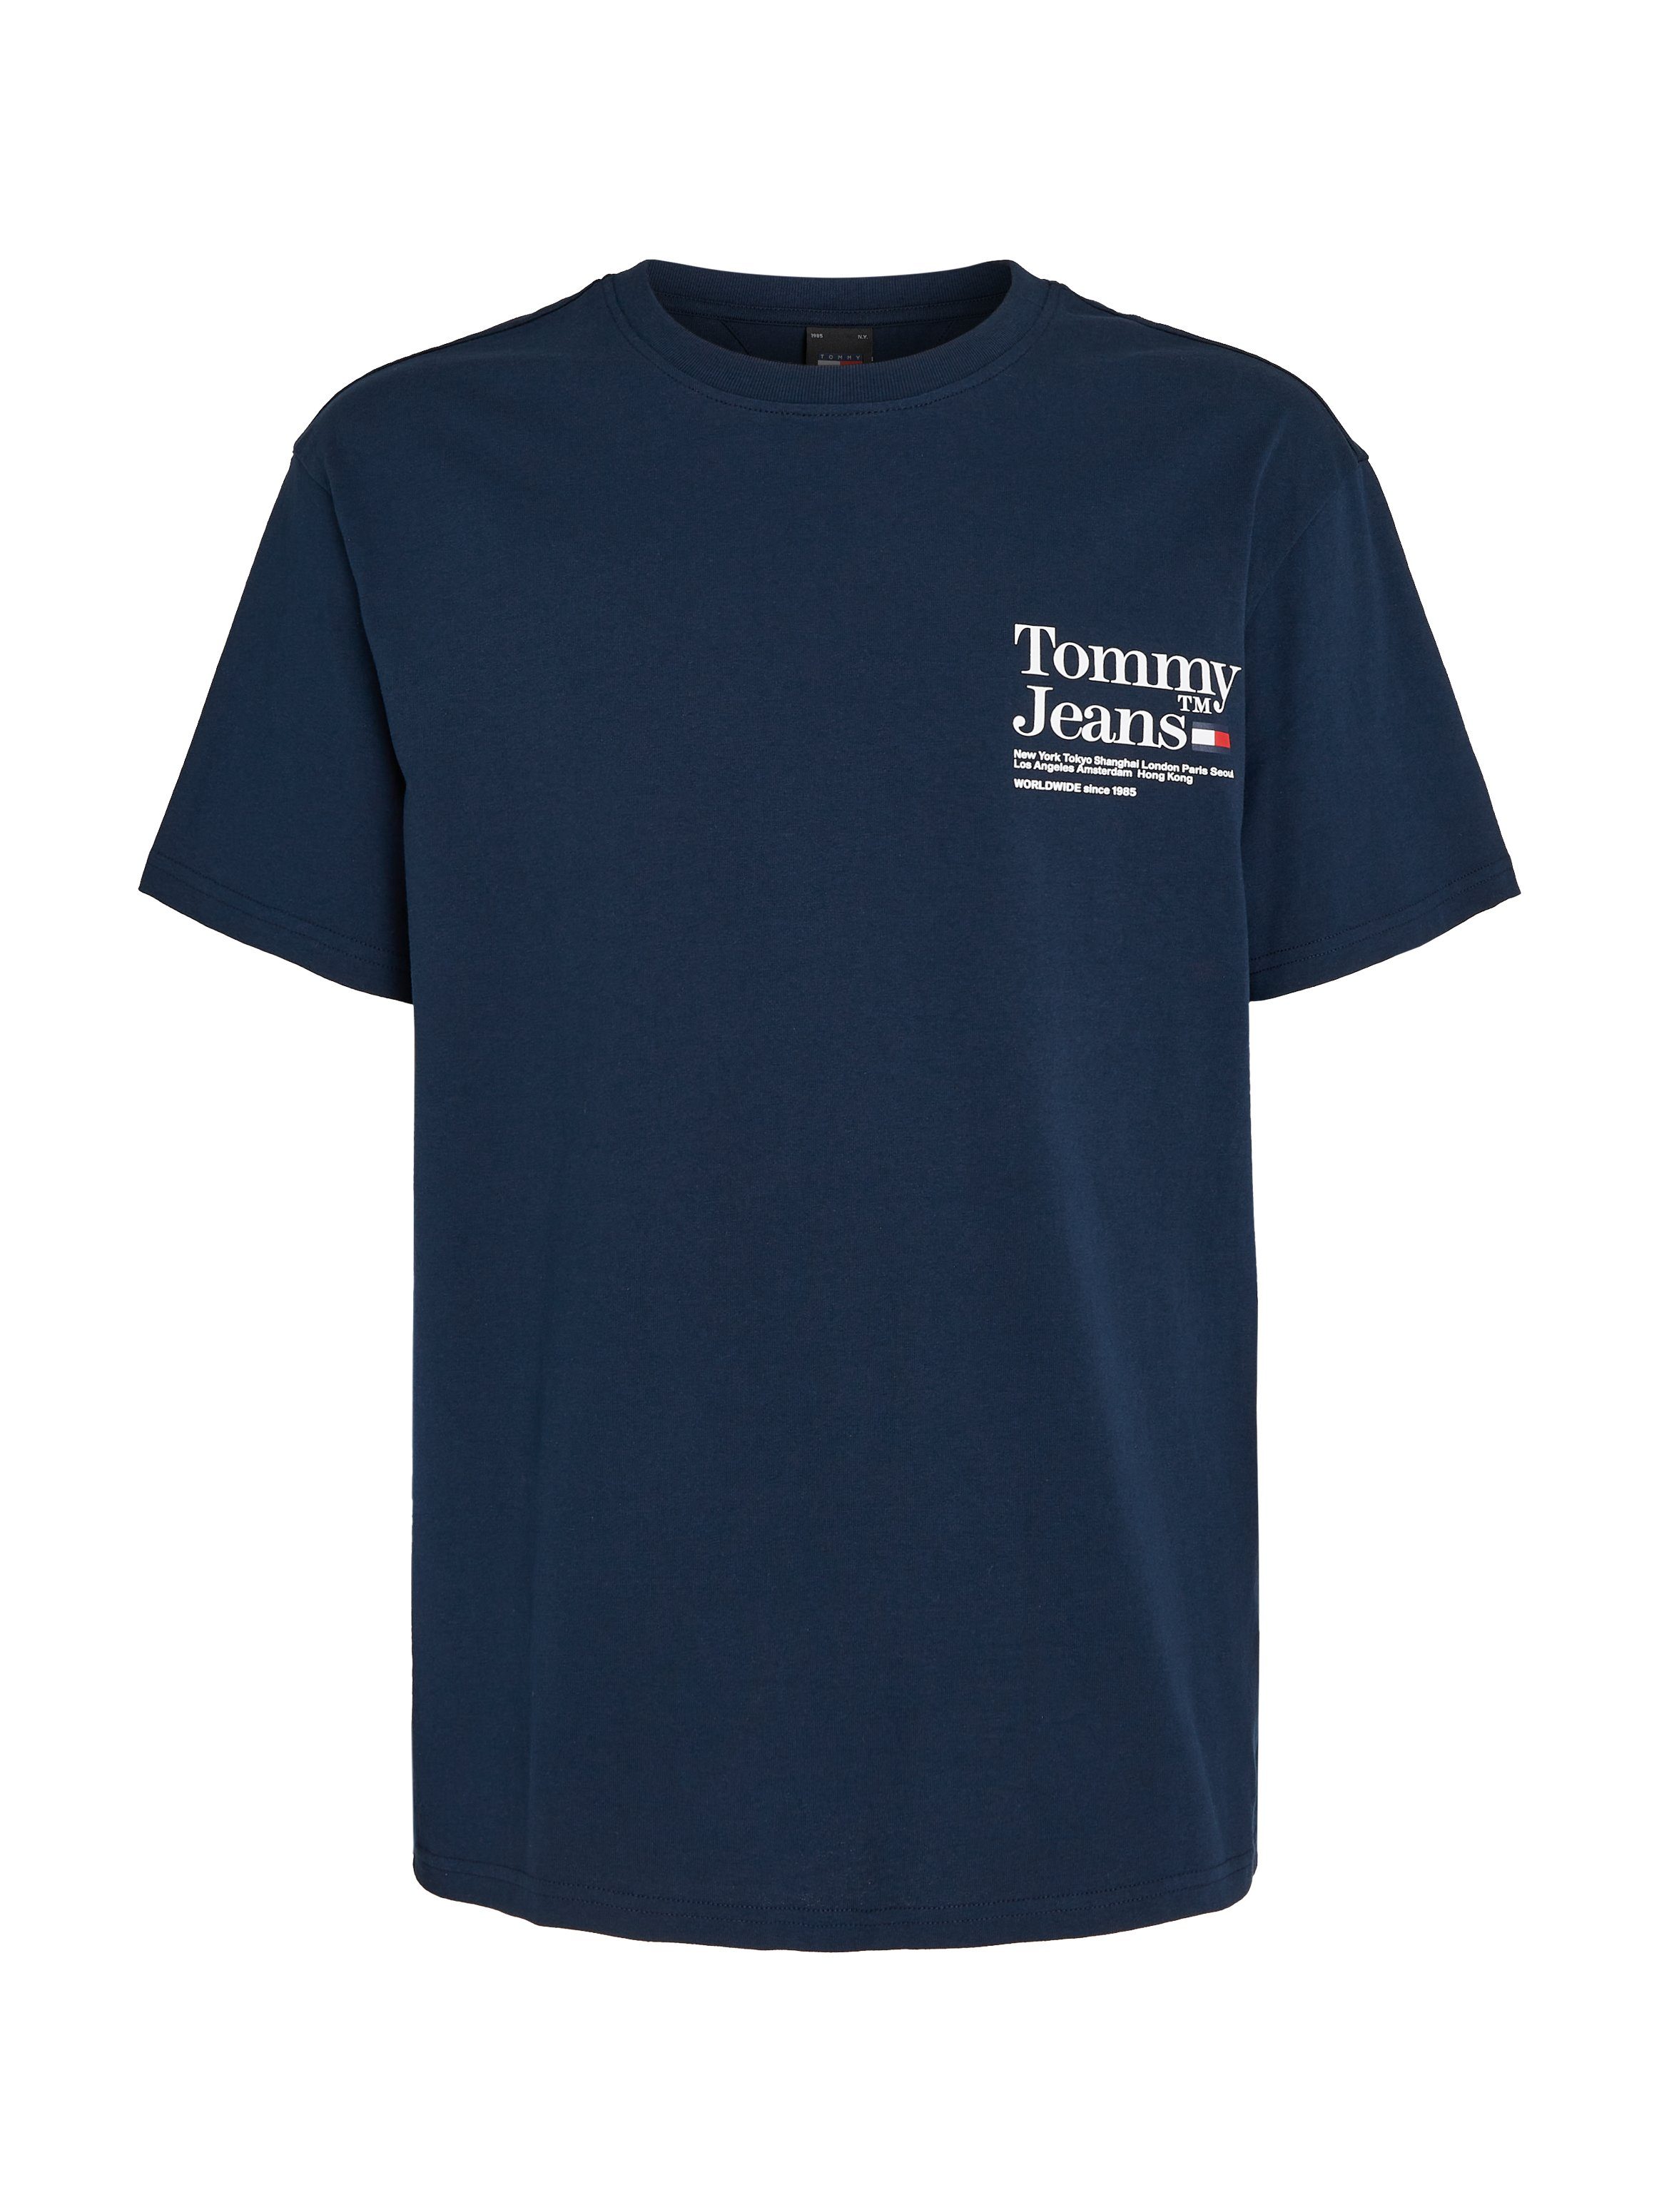 T-Shirt Aufdruck Night MODERN Jeans TM Rücken auf dem TOMMY TEE Dark REG großem mit TJM Navy Tommy